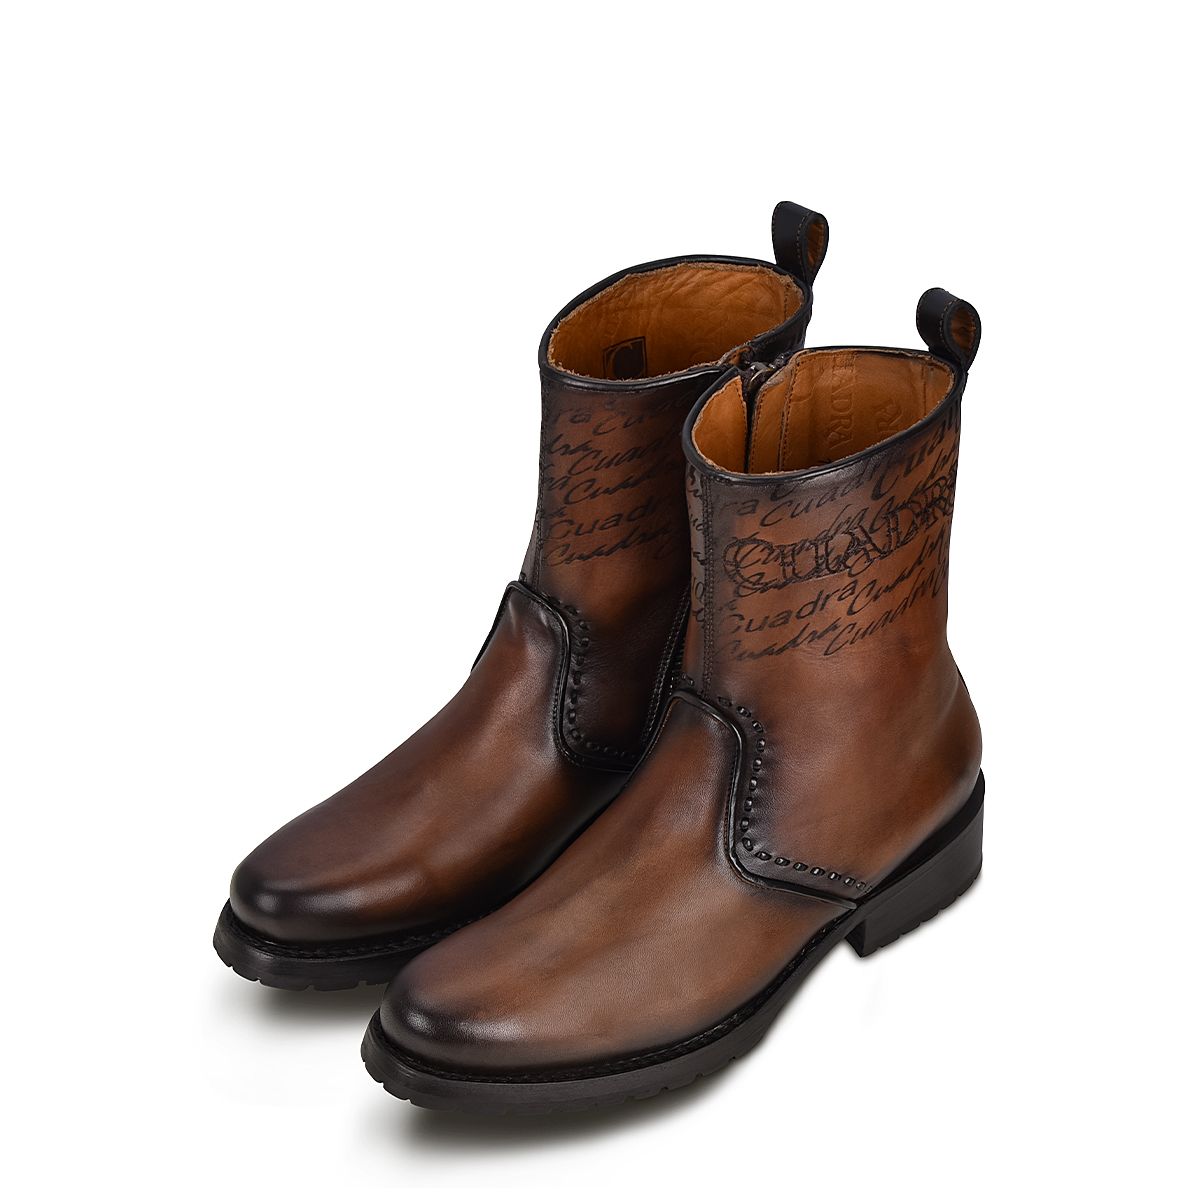 Brown leather bifold men's wallet- B3014TI - Cuadra Shop